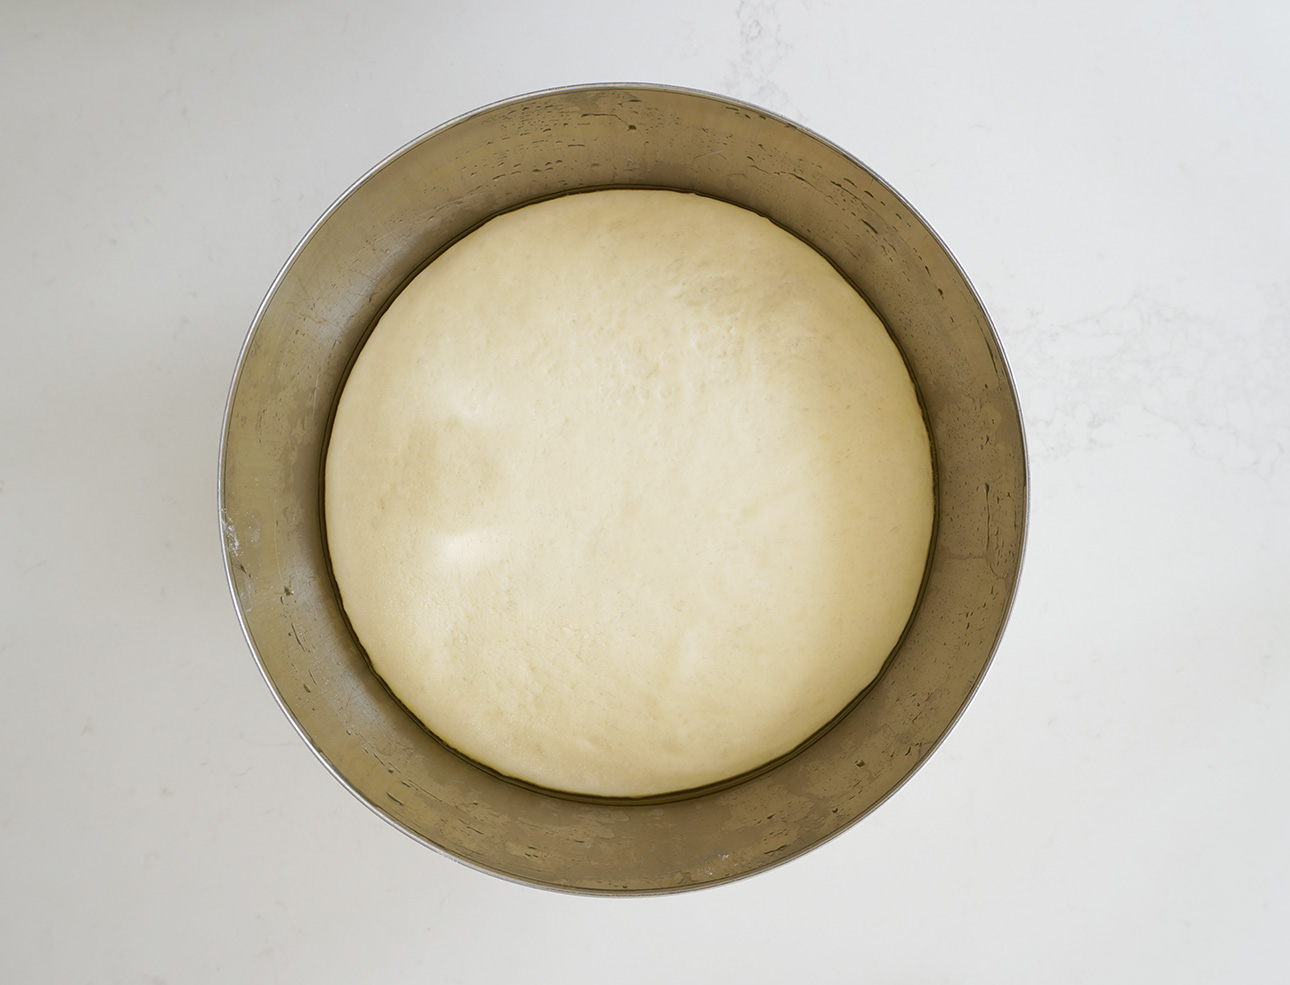 A ball of freshly made bread dough // FoodNouveau.com